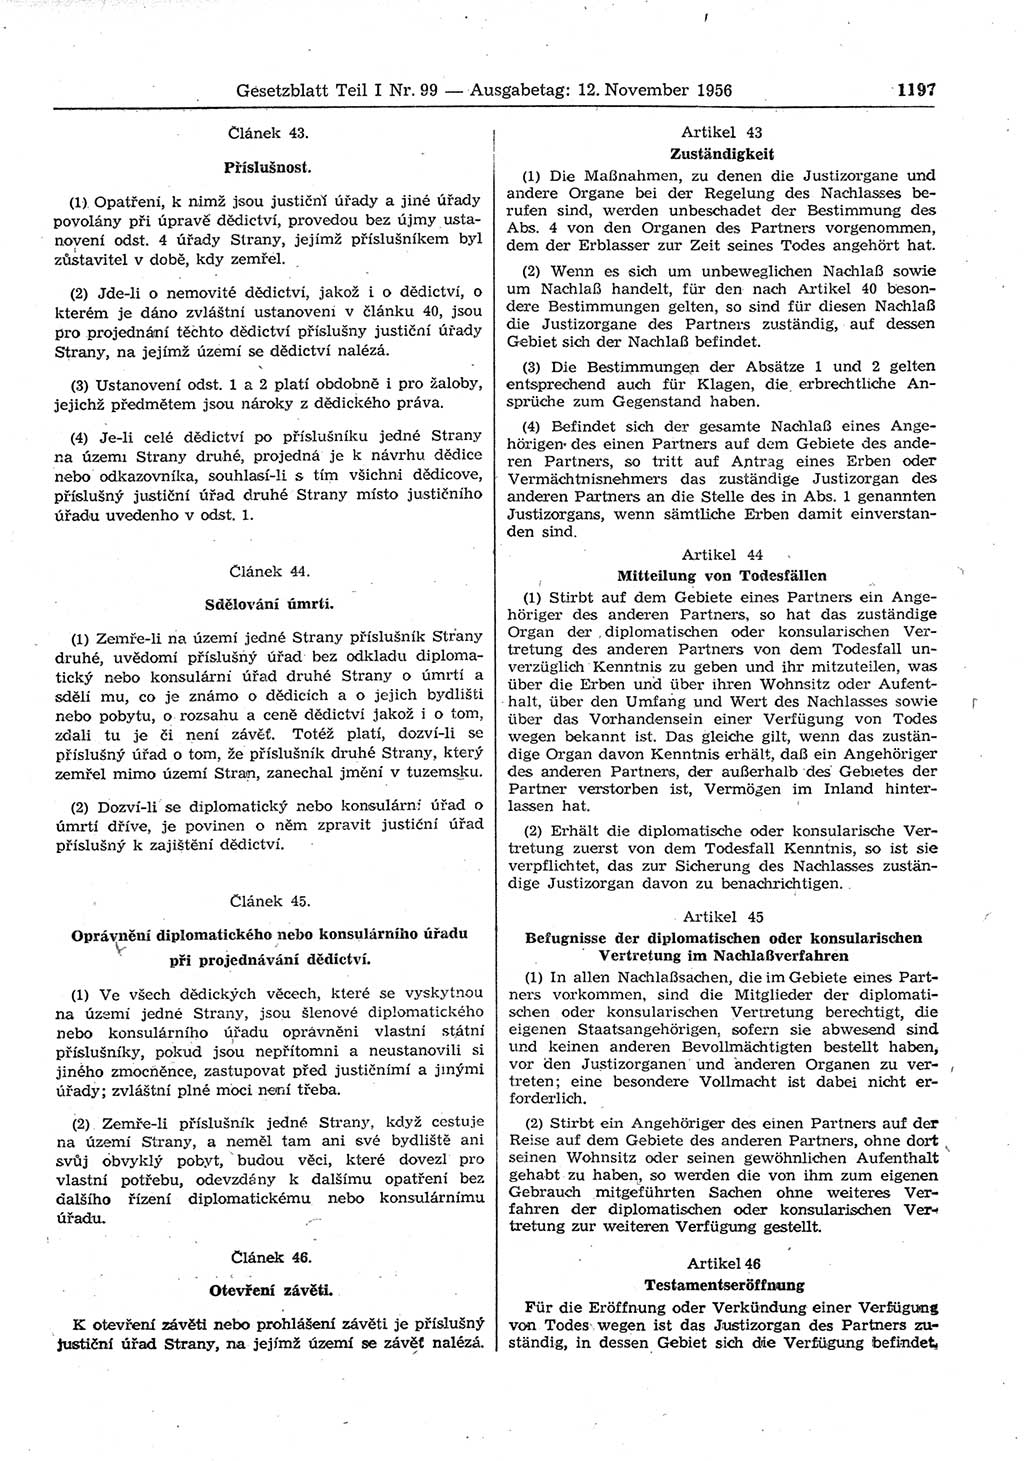 Gesetzblatt (GBl.) der Deutschen Demokratischen Republik (DDR) Teil Ⅰ 1956, Seite 1197 (GBl. DDR Ⅰ 1956, S. 1197)